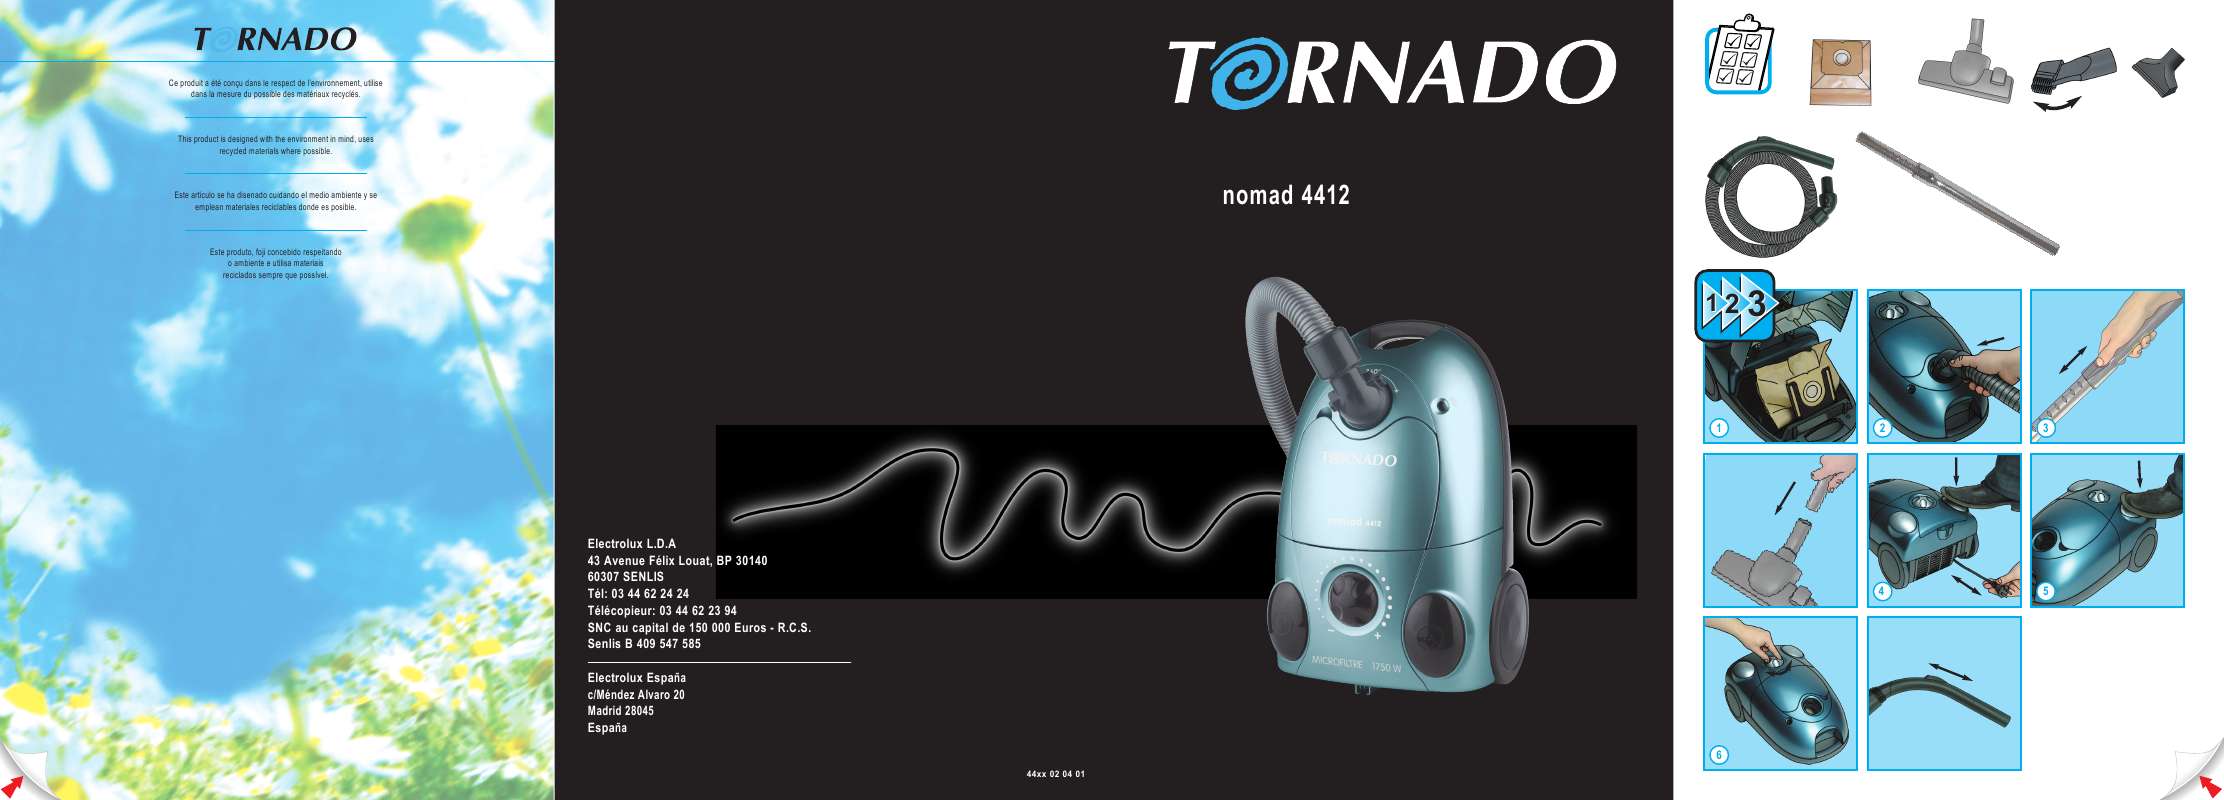 Guide utilisation TORNADO TO4411 de la marque TORNADO